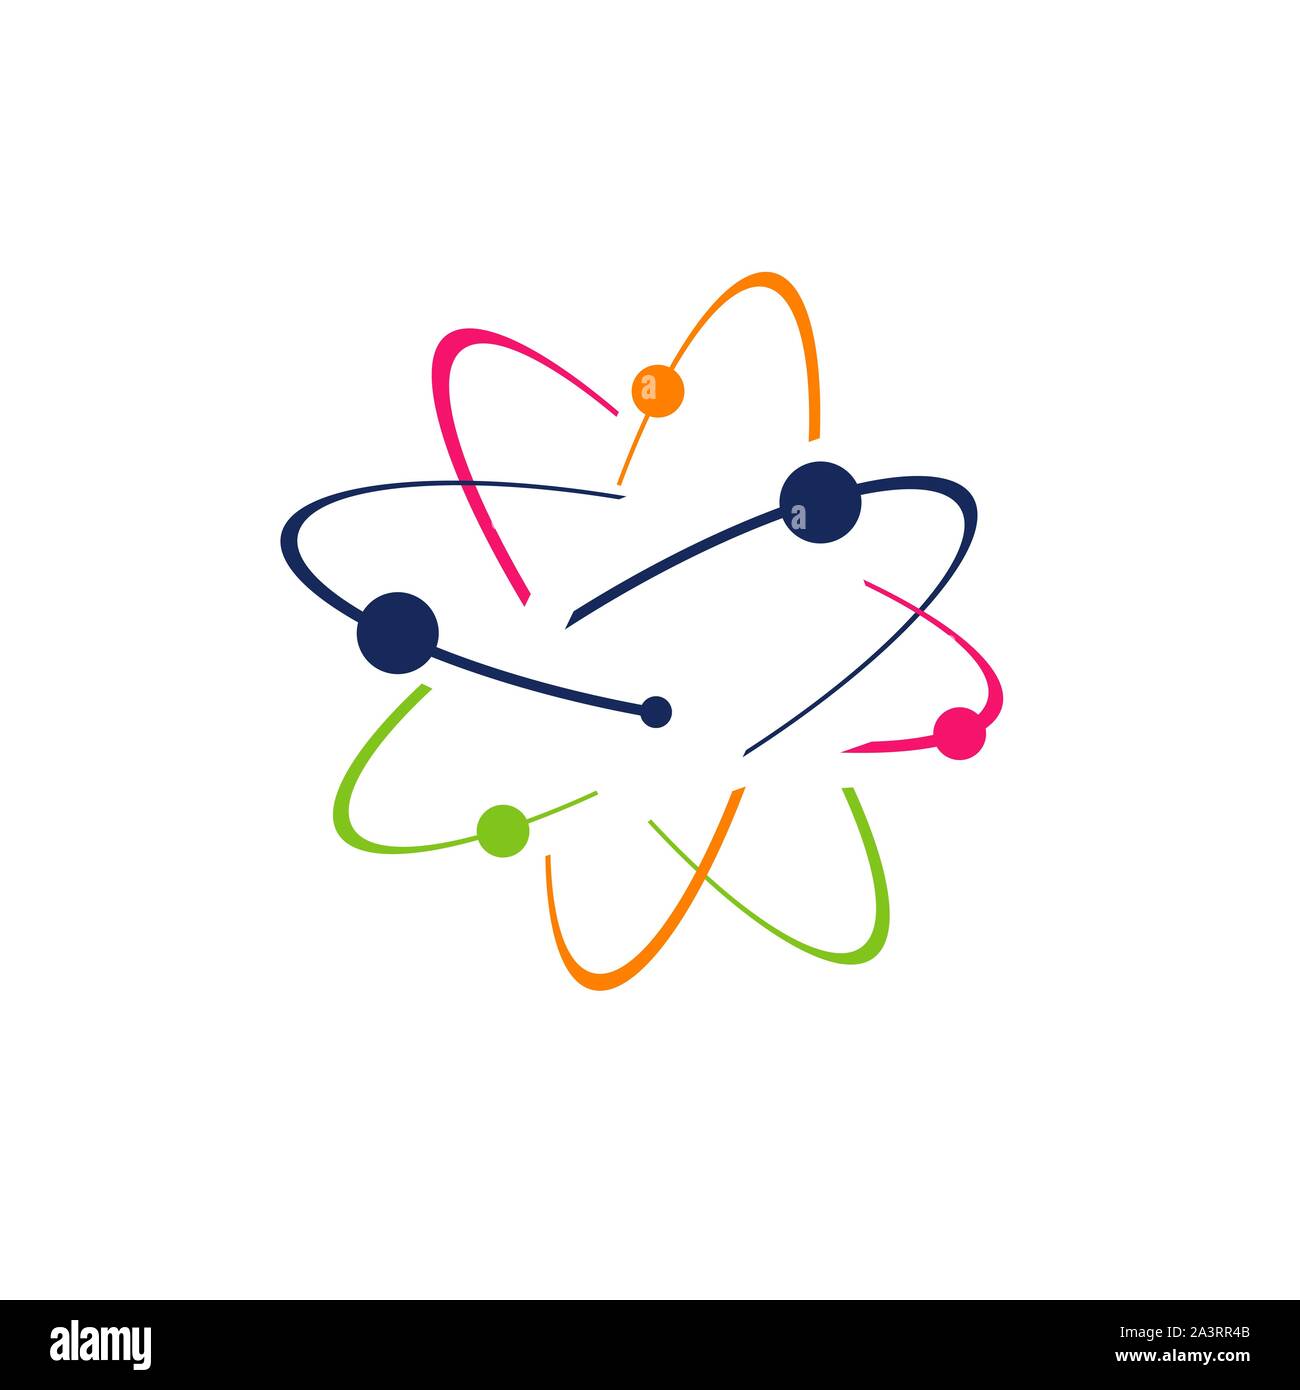 Simbolo della scienza ricerca logo Atom icona Vettore illustrazione. Gli elettroni ruotano in orbite intorno al nucleo atomico concept Illustrazione Vettoriale